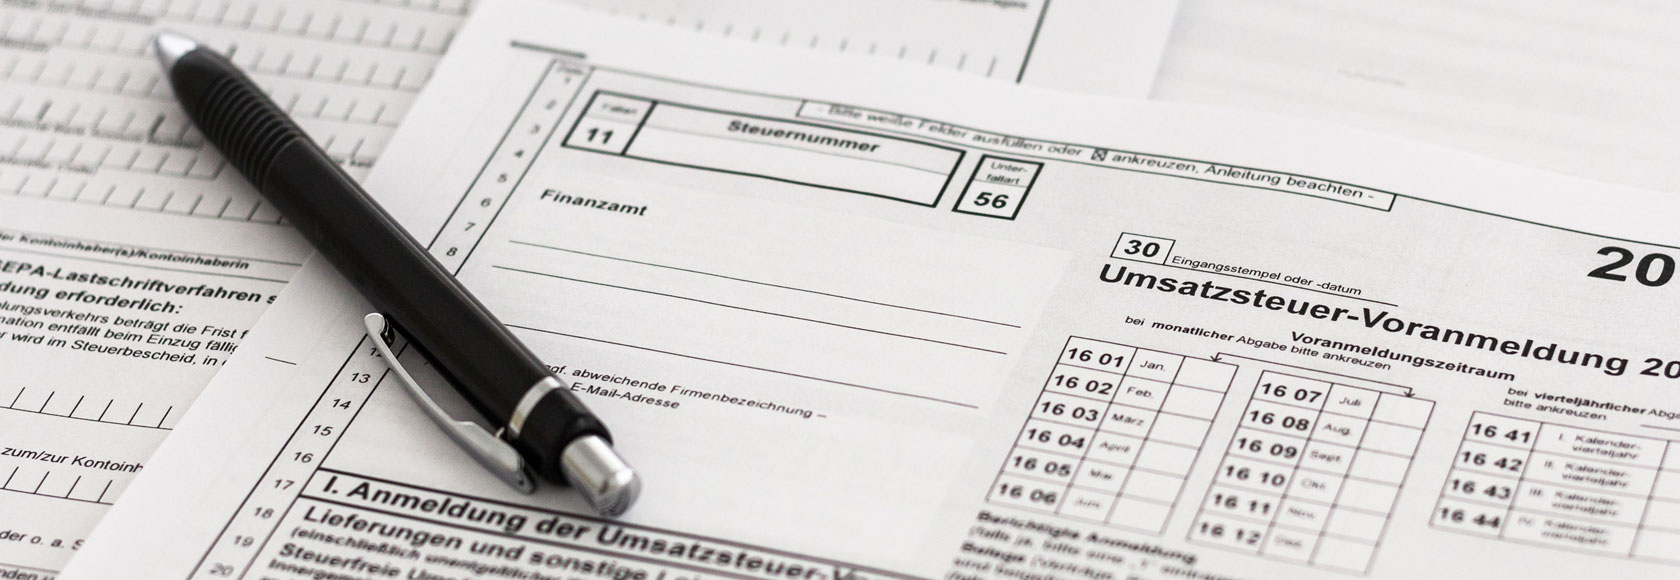 Formulare Umsatzsteuer-Voranmeldung